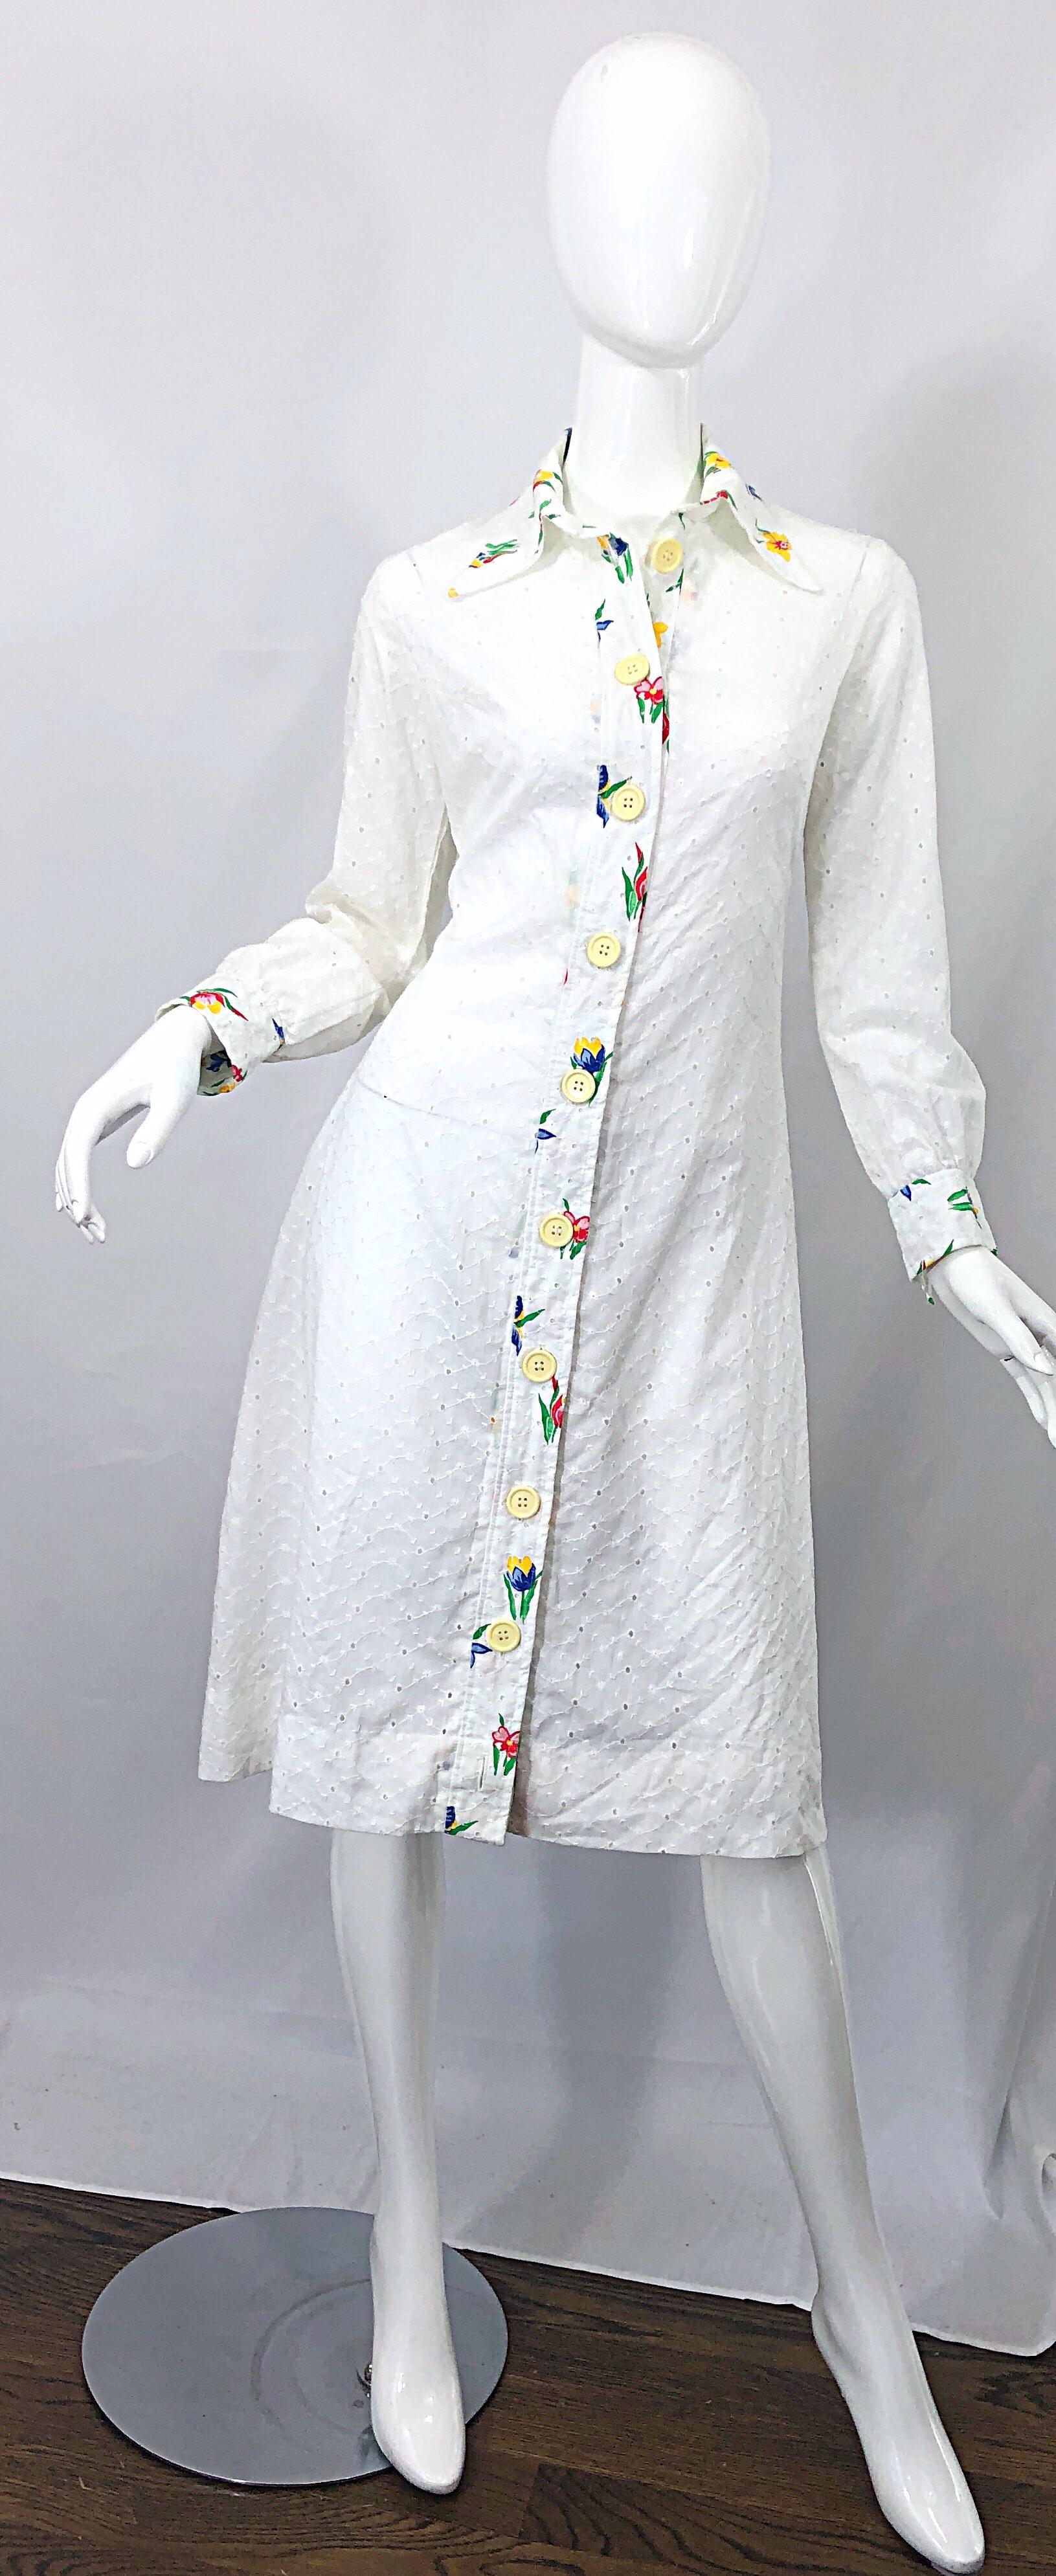 Schickes 1970er JOSEPH MAGNIN Hemdkleid aus weißer Baumwolle mit Ösenstickerei! In strahlendem Weiß mit gestickten Blumen in der vorderen Mitte, am Kragen und an den Ärmelbündchen. Kräftige Farben in Rot, Blau, Gelb, Grün und Orange. Knöpfe auf der